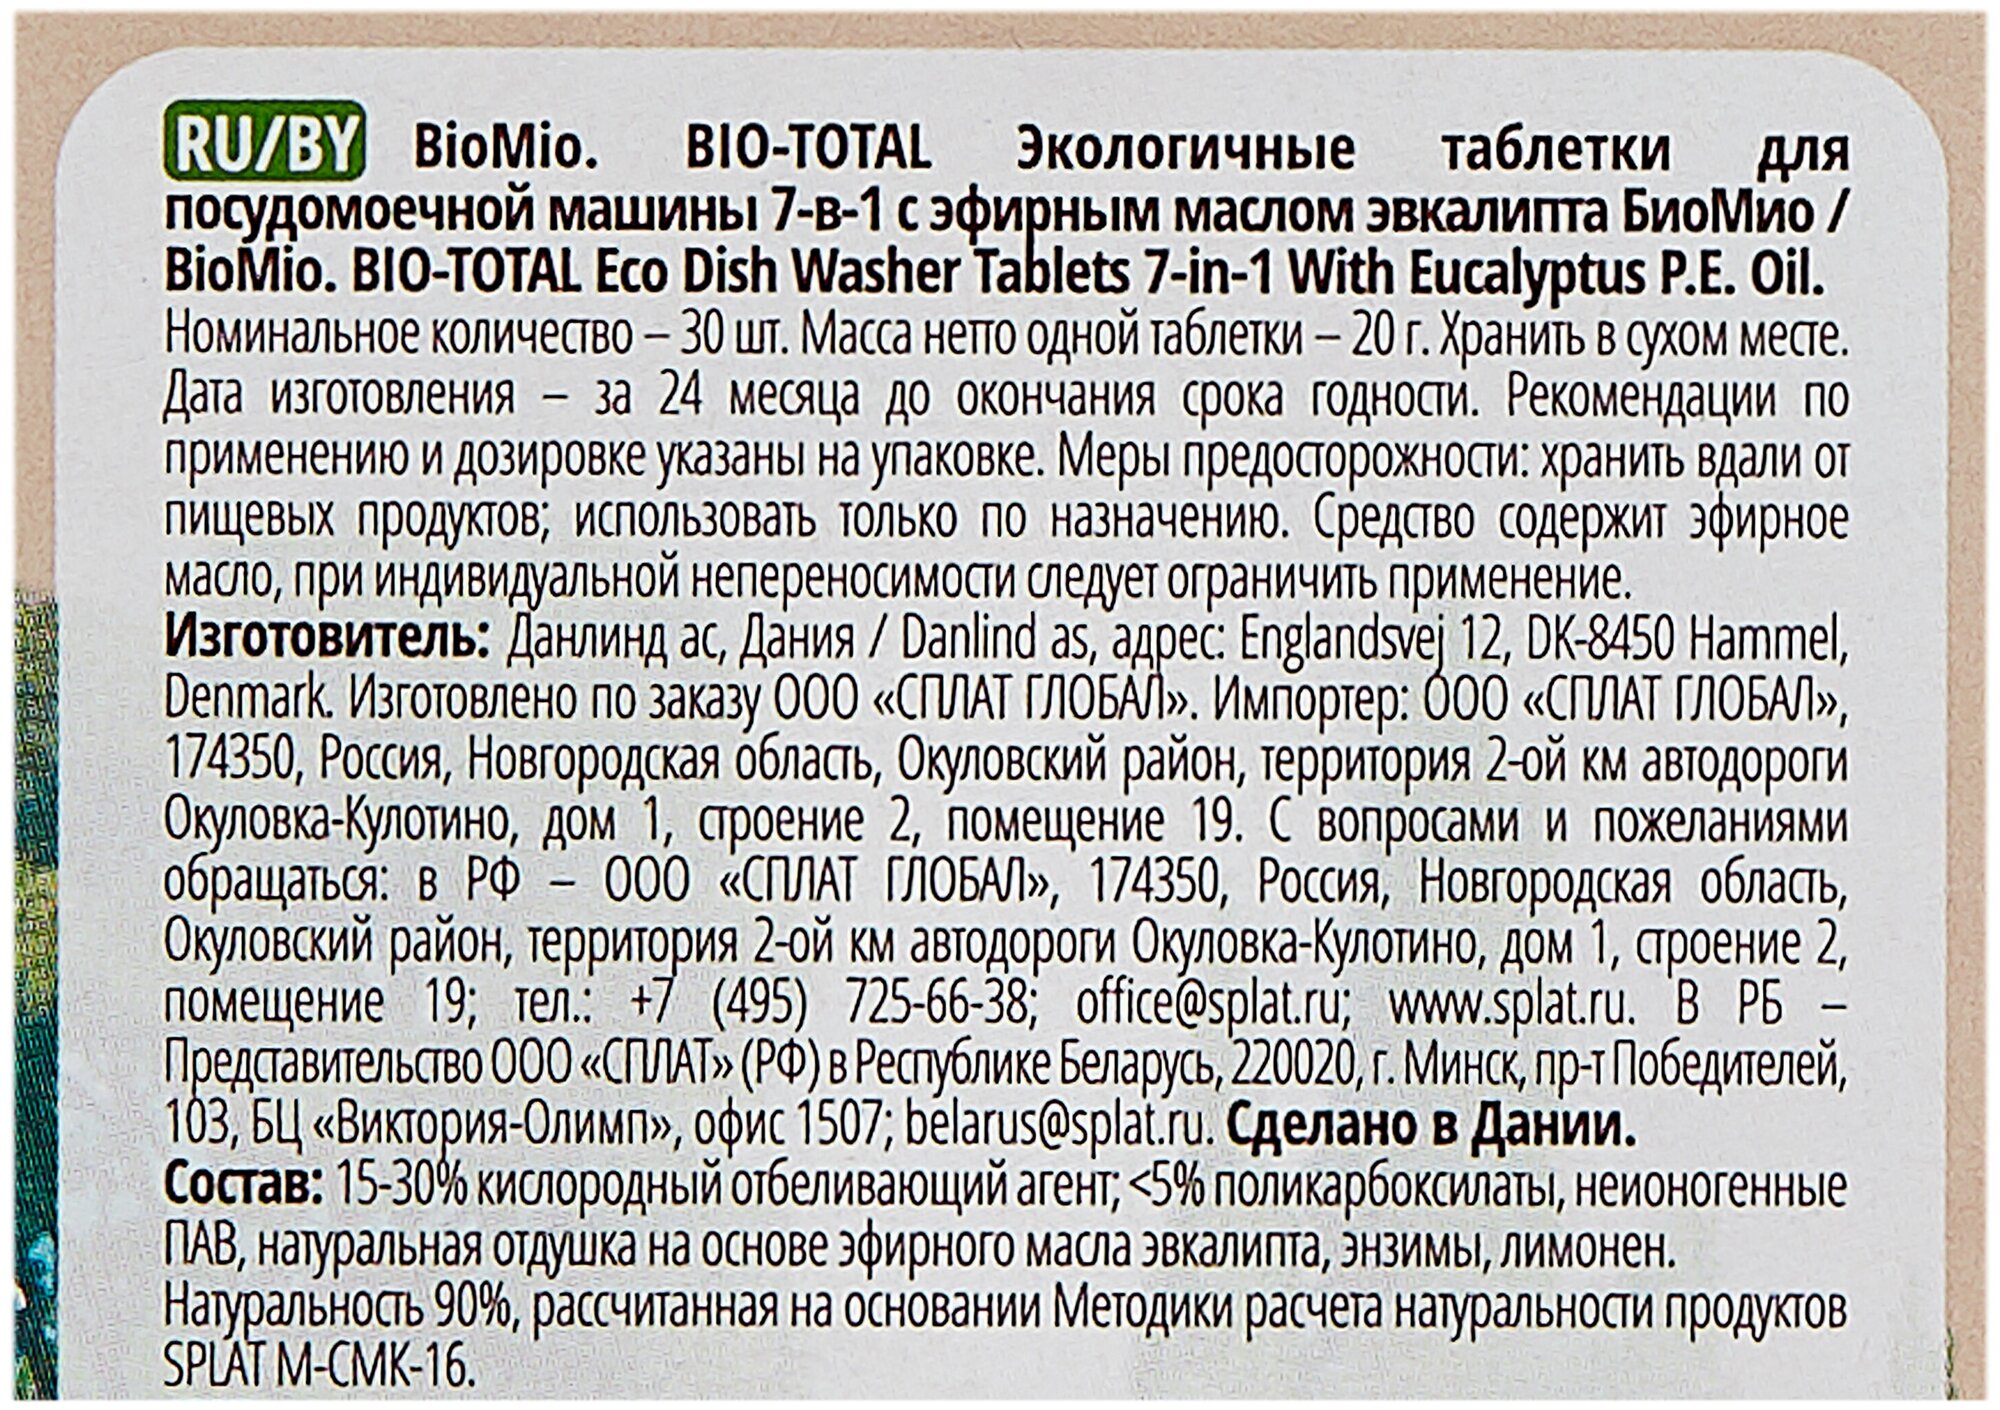 ЭКО таблетки для посудомоечной машины BioMio Family Pack c маслом эвкалипта спайка 180 штук (6 упаковок по 30 штук) - фотография № 4